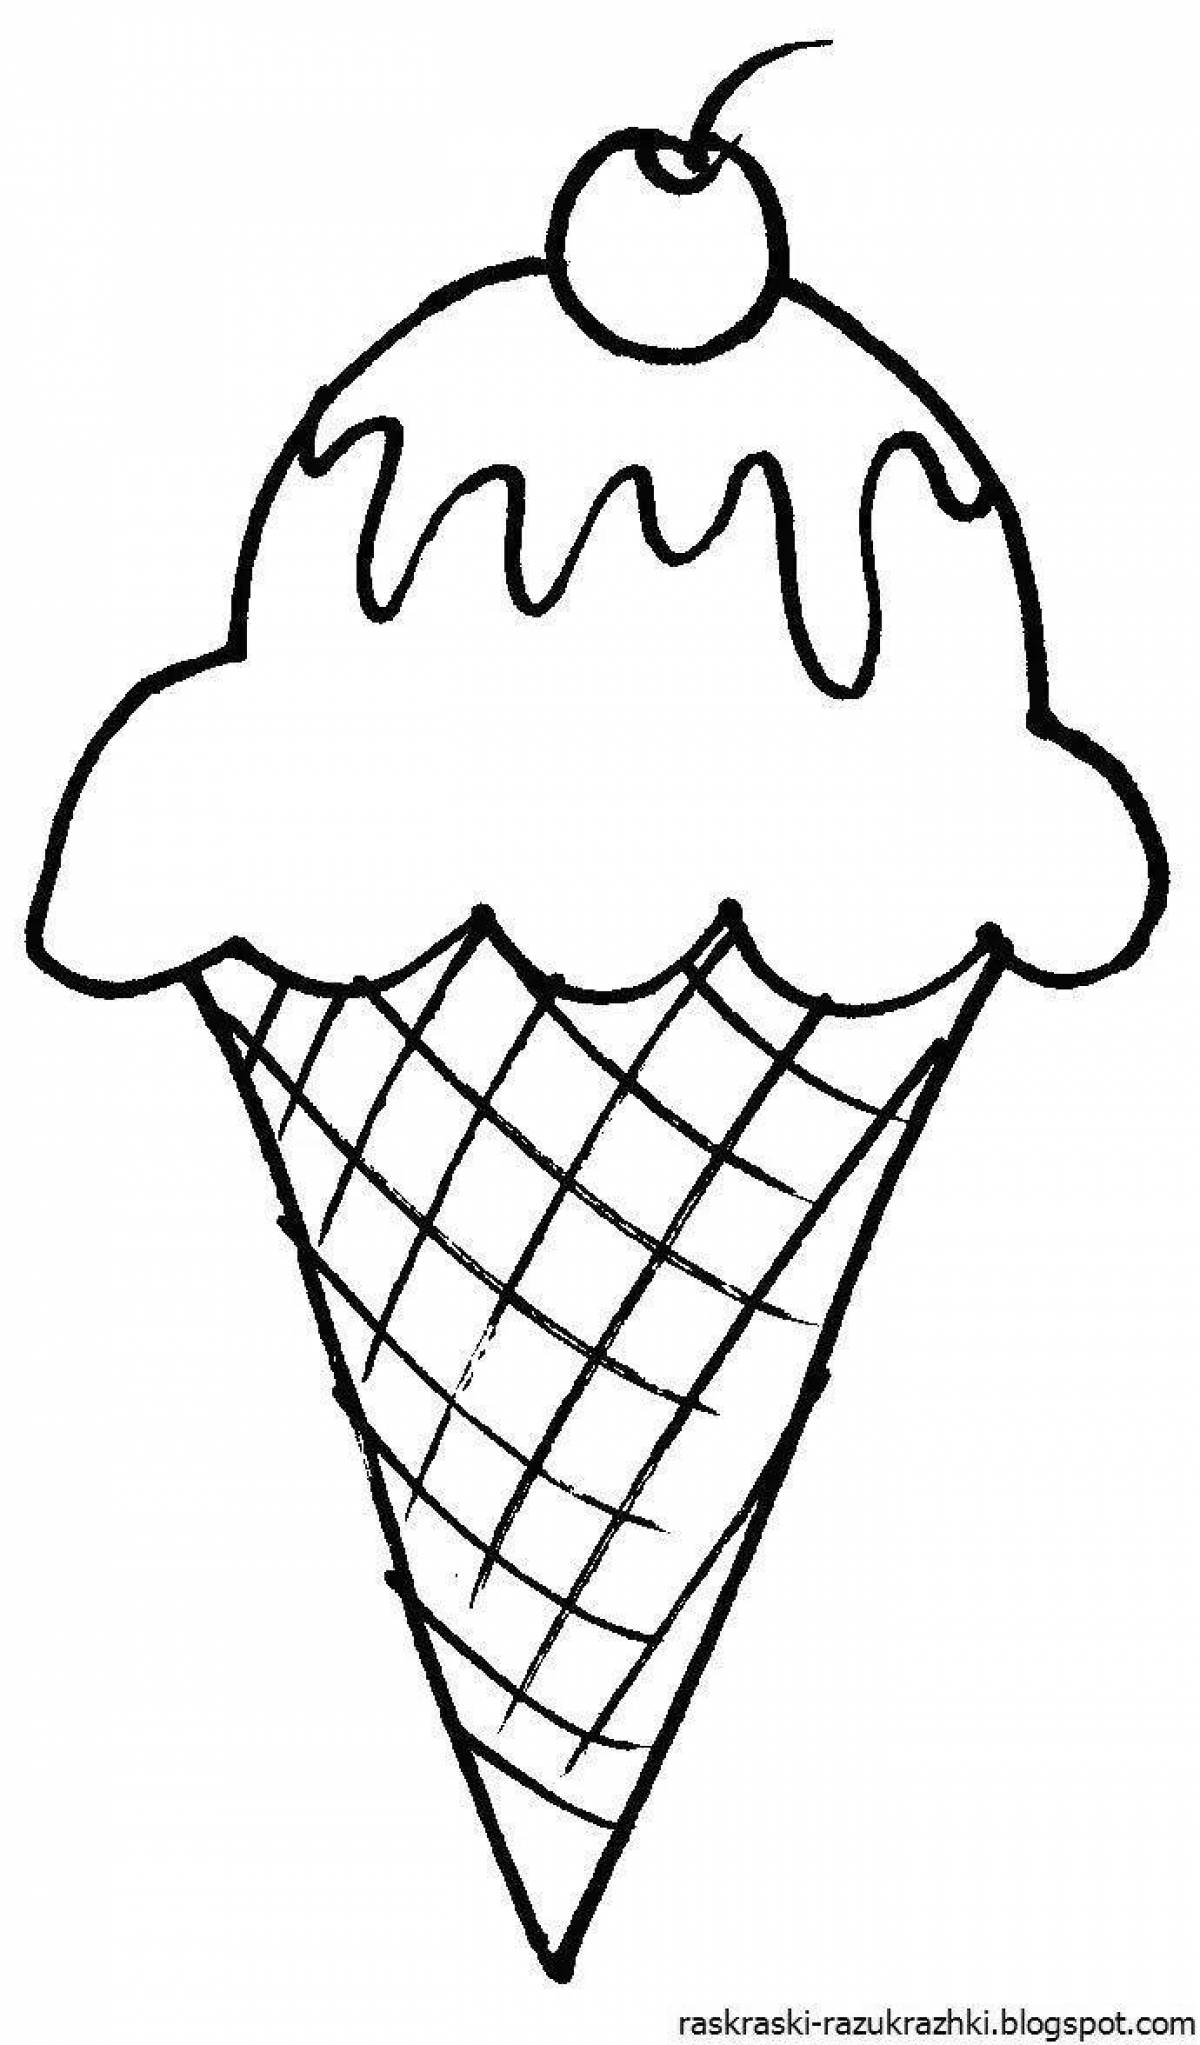 Увлекательный рисунок мороженого